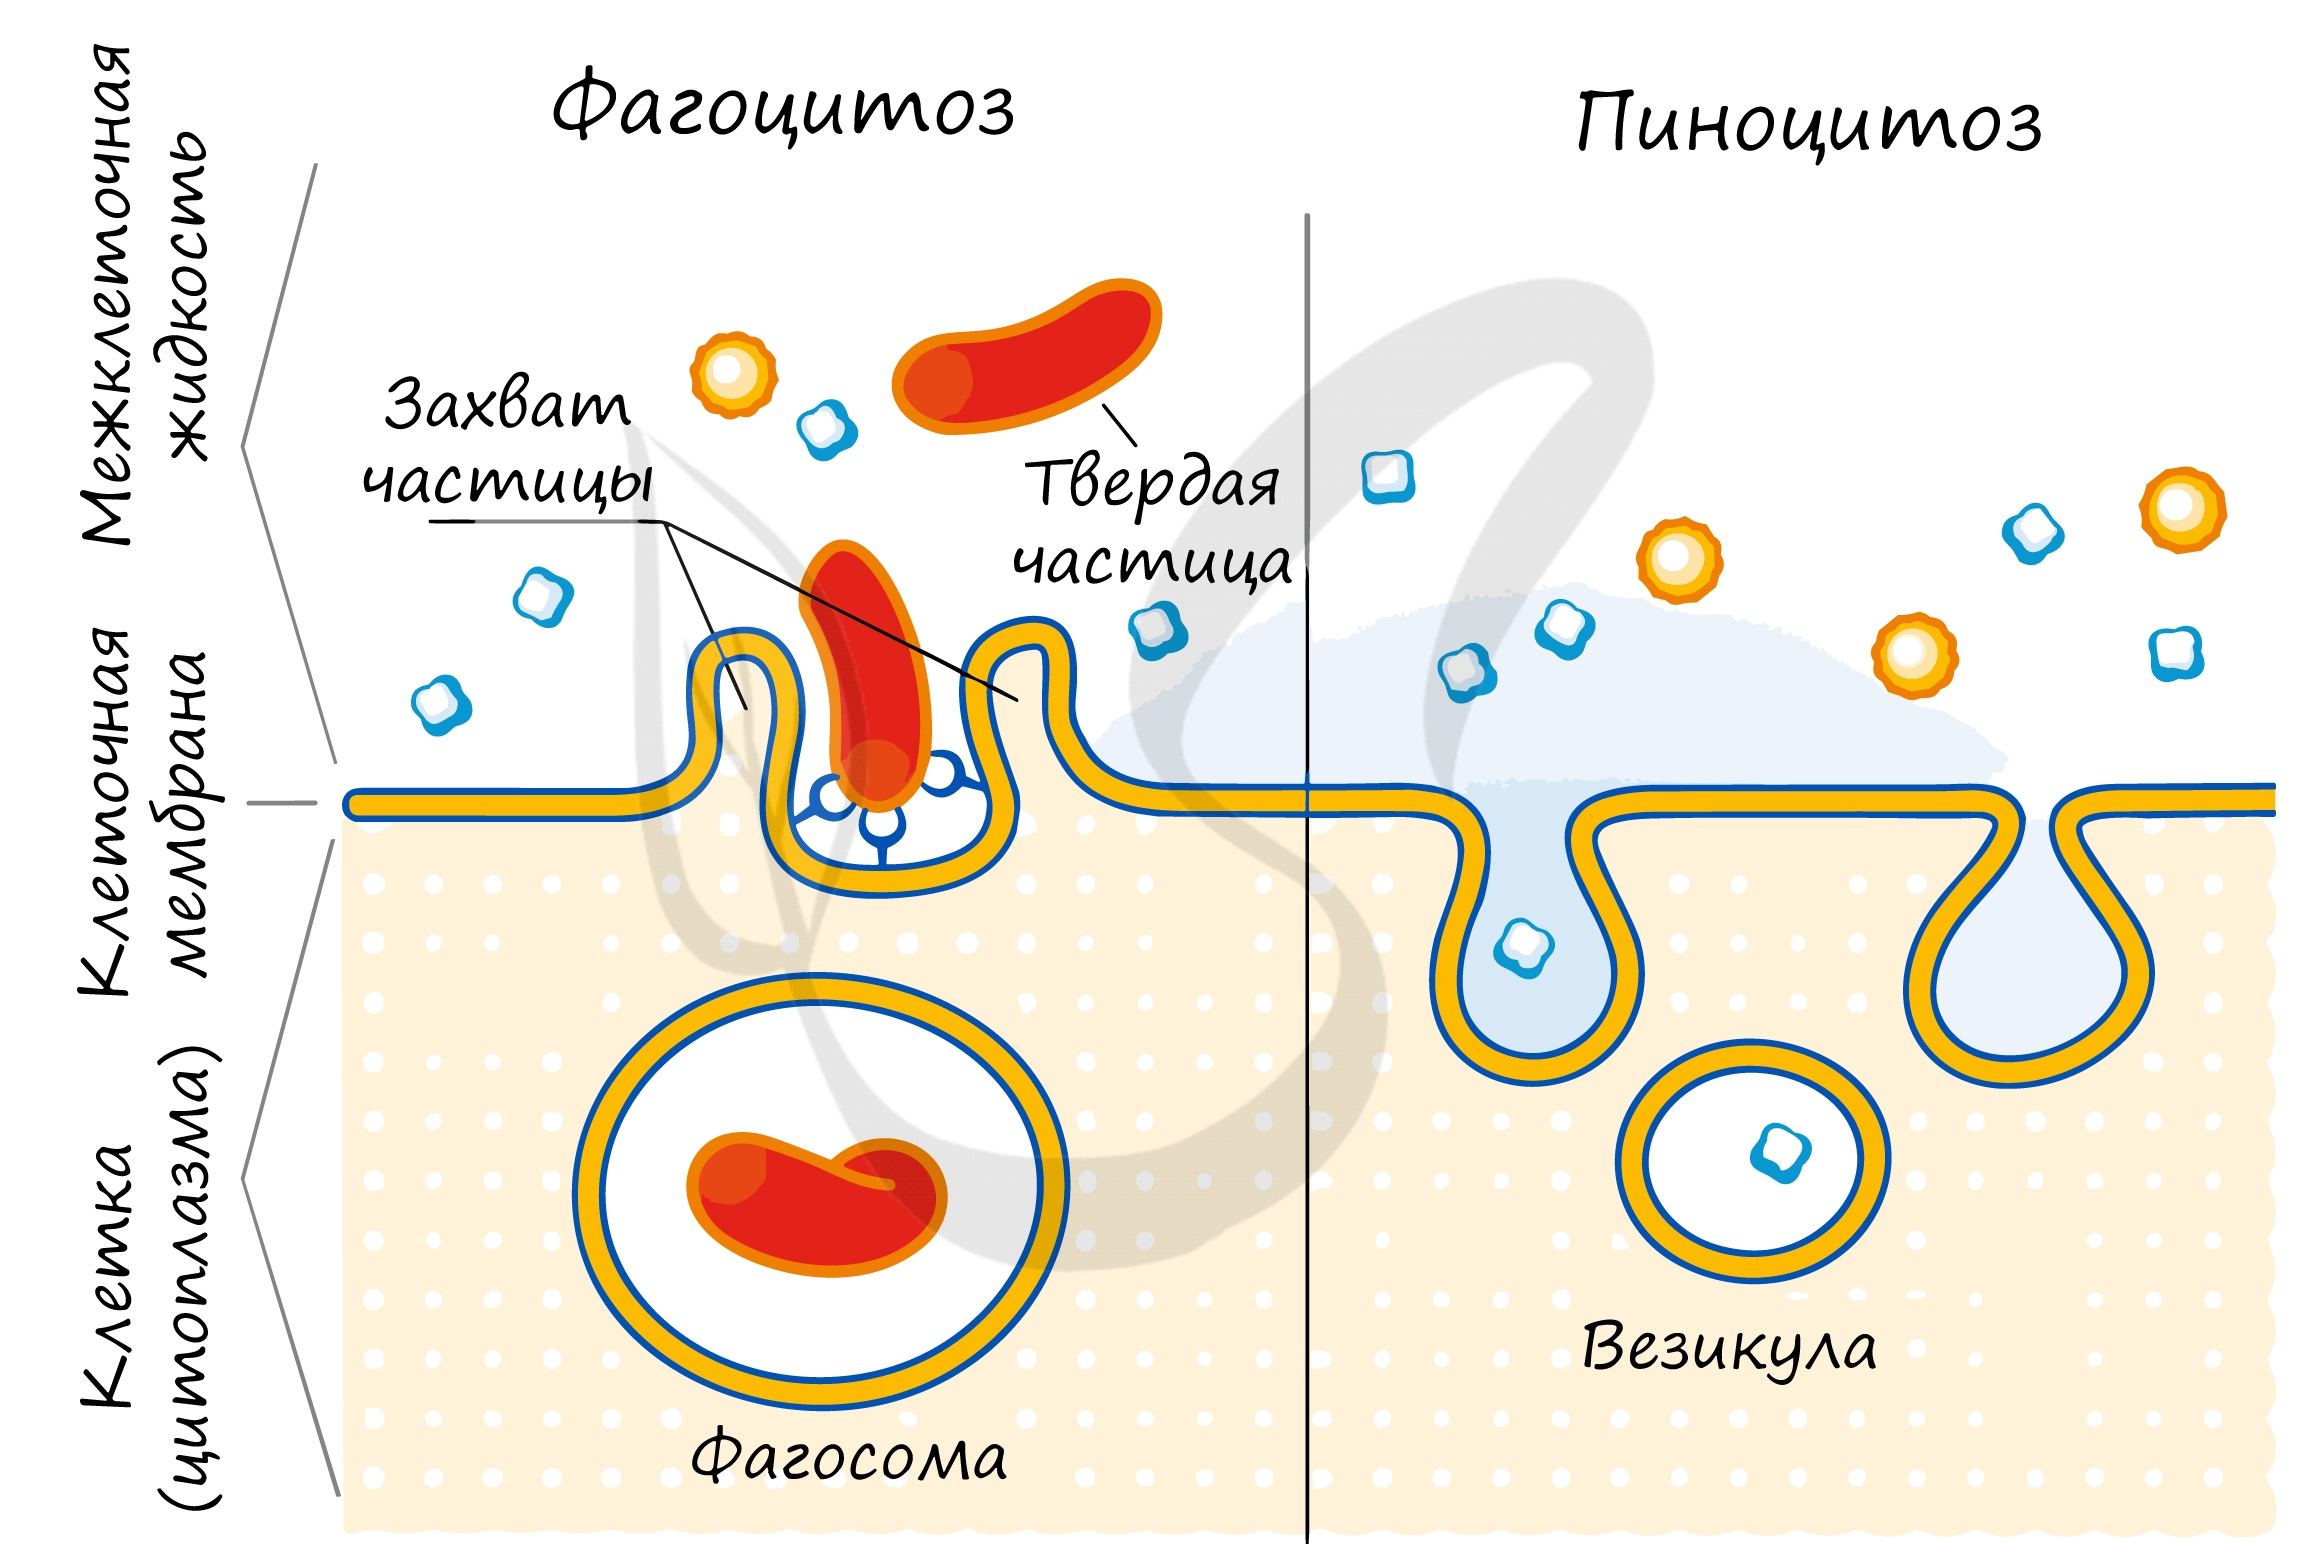 Фагоцитоз захват. Схема фагоцитоза и пиноцитоза. Схема эндоцитоза. Фагоцитоз мембраны клетки. Эндоцитоз экзоцитоз фагоцитоз это.